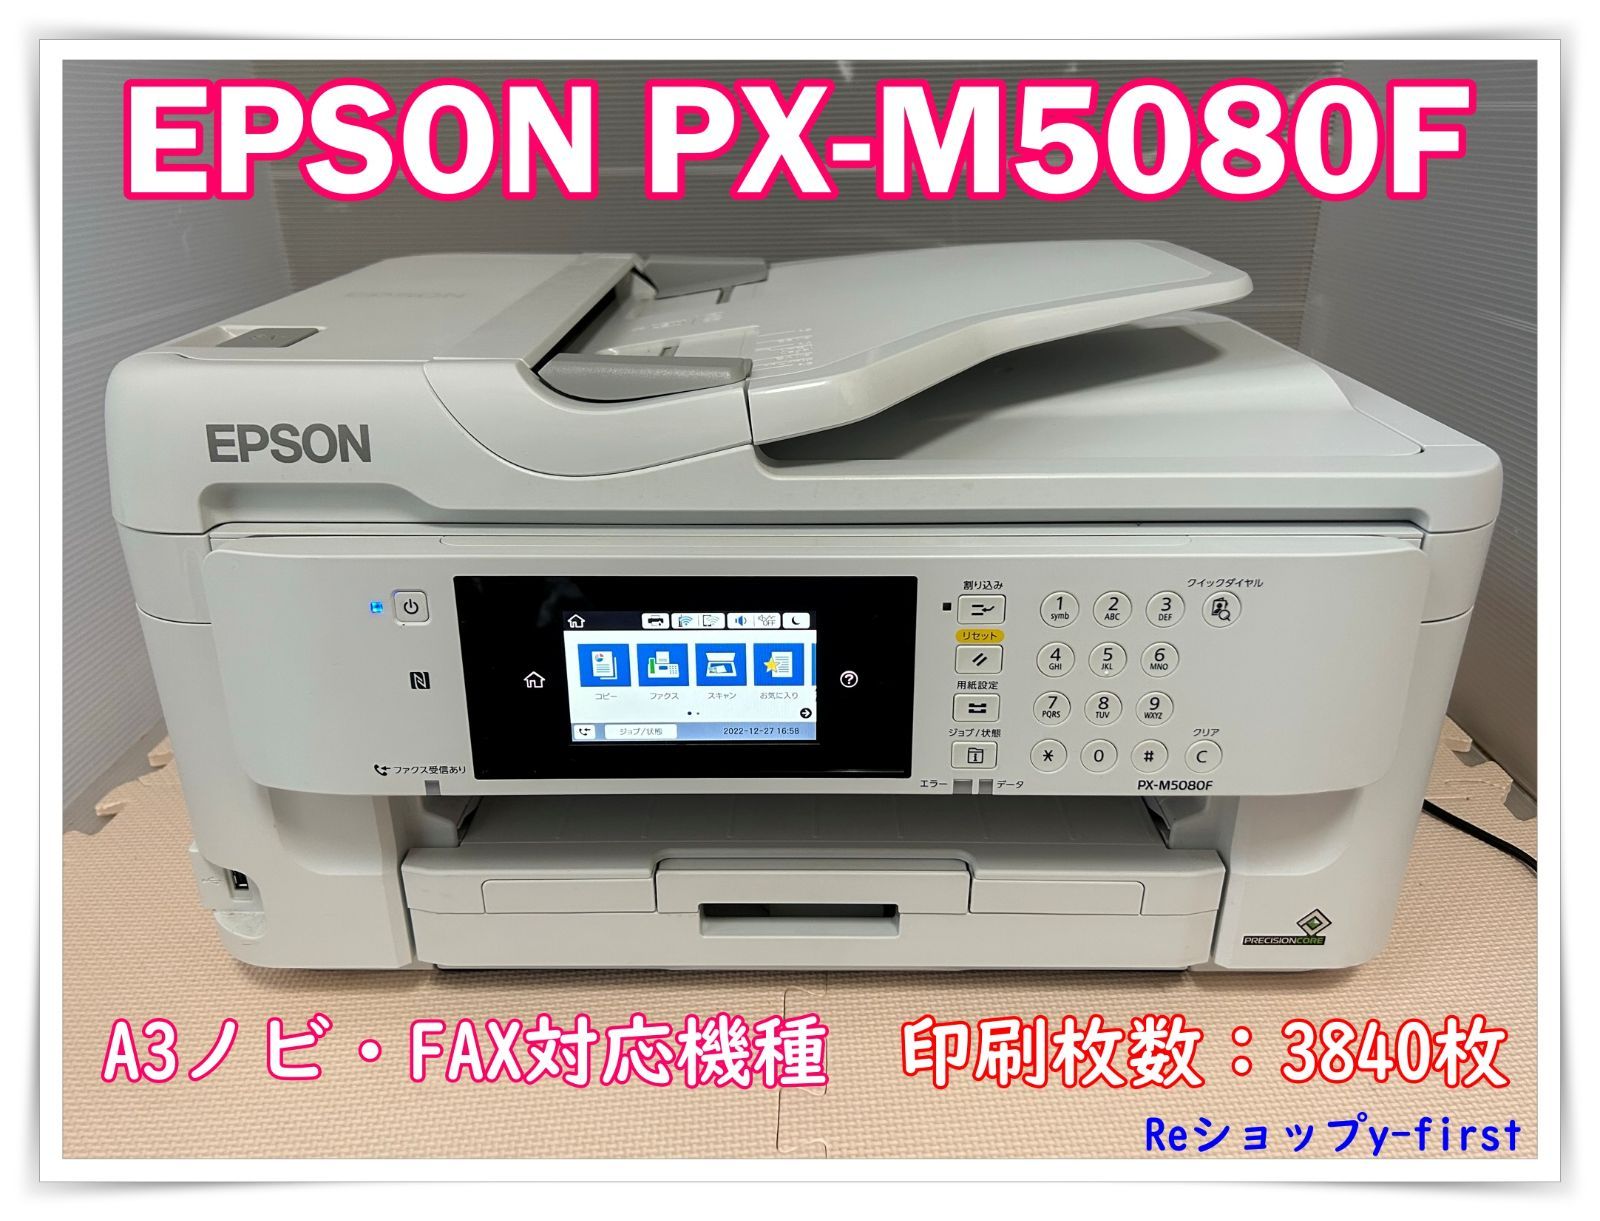 FAX付き複合プリンター EPSON PX-M5080F - 電話、ＦＡＸ